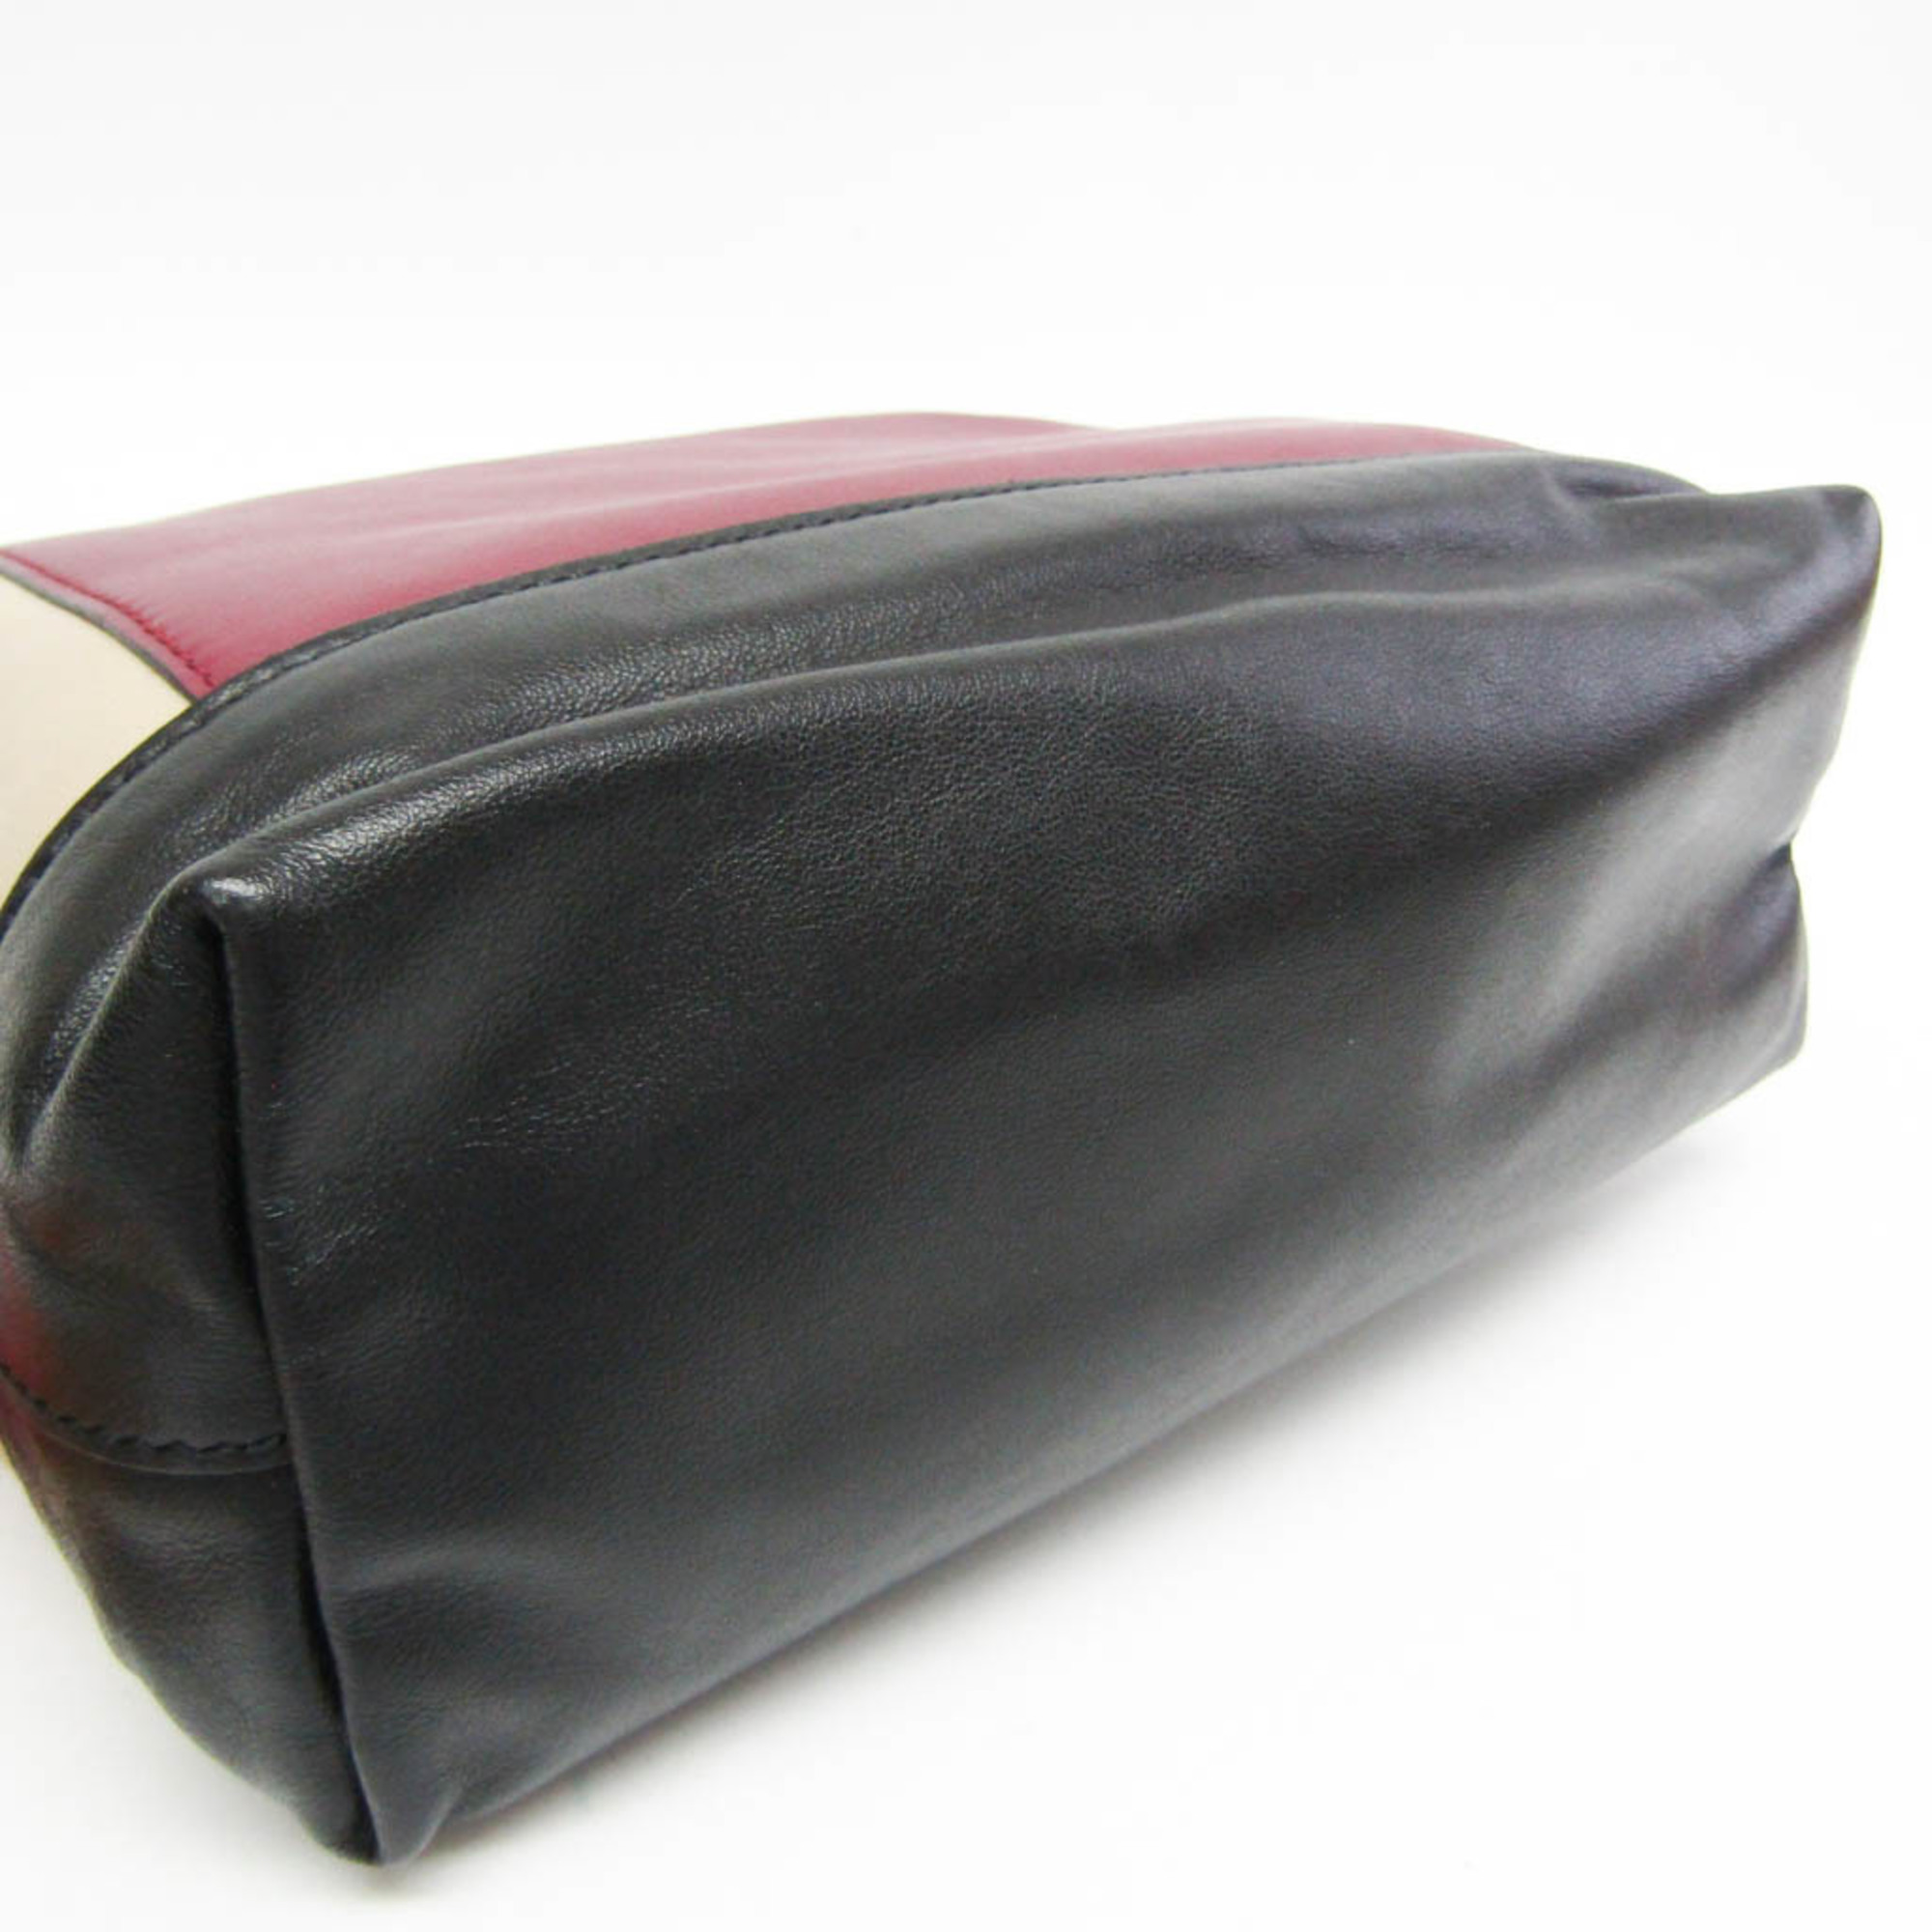 Marni PHMP0031Y0 P4092 Women's Leather Clutch Bag Beige,Black,Bordeaux,Multi-color